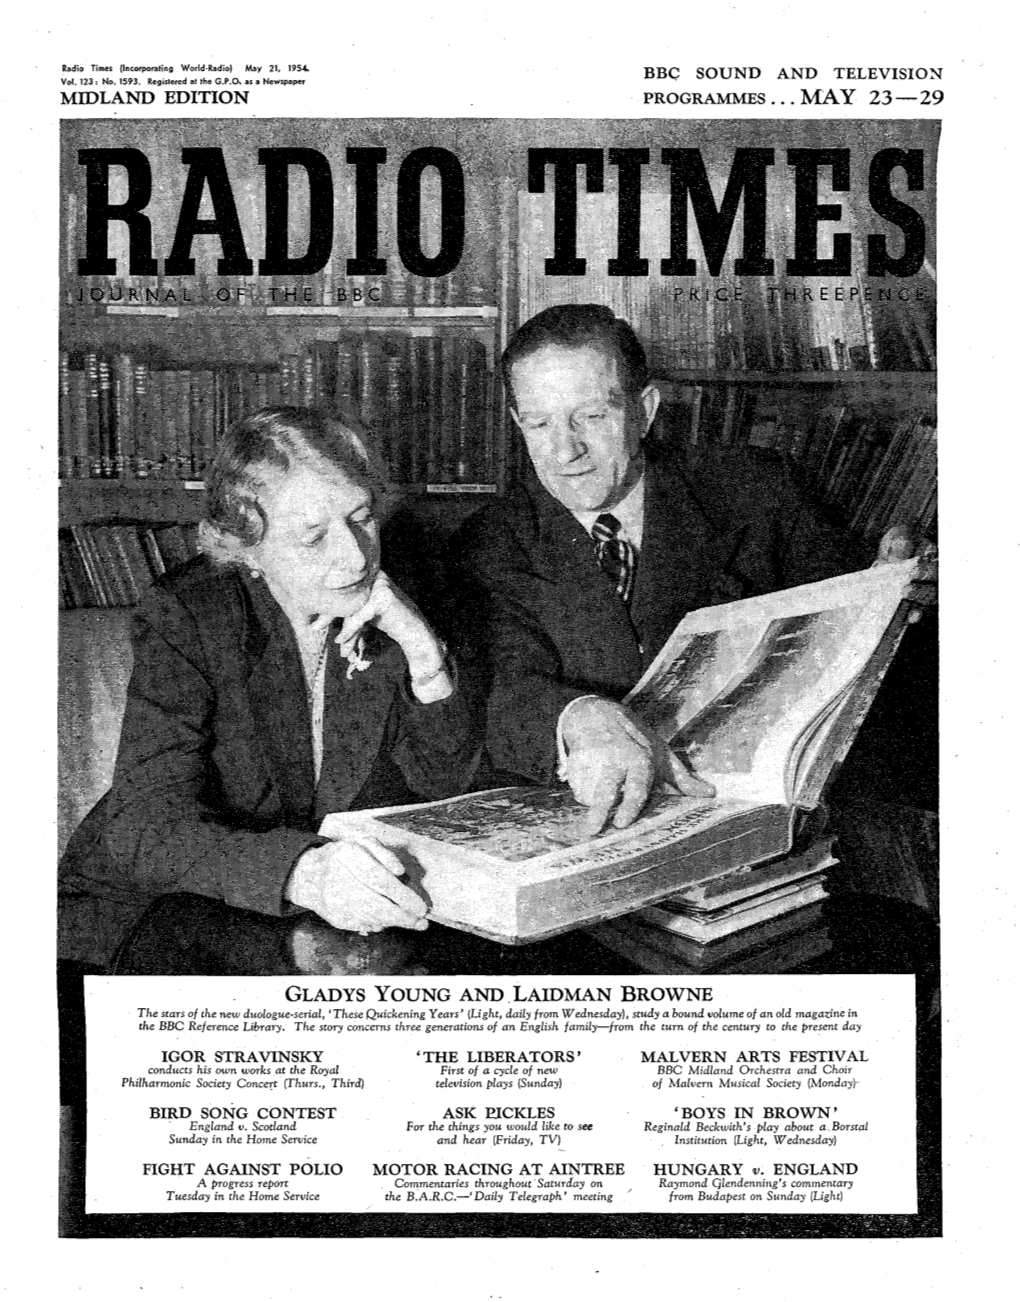 Radio Times, May 21, 1954